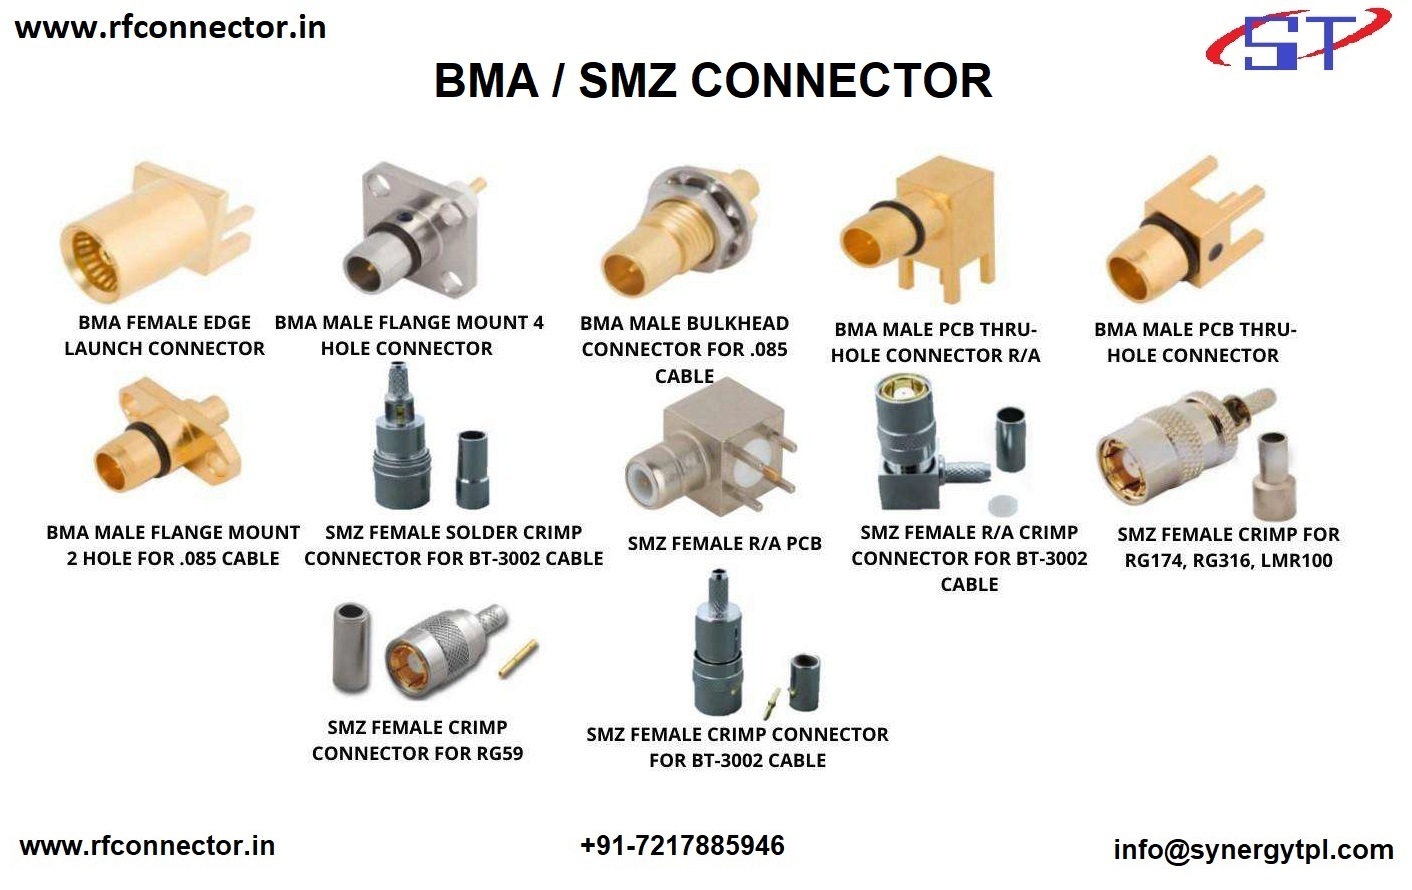 SMZ Female RG174 Cable